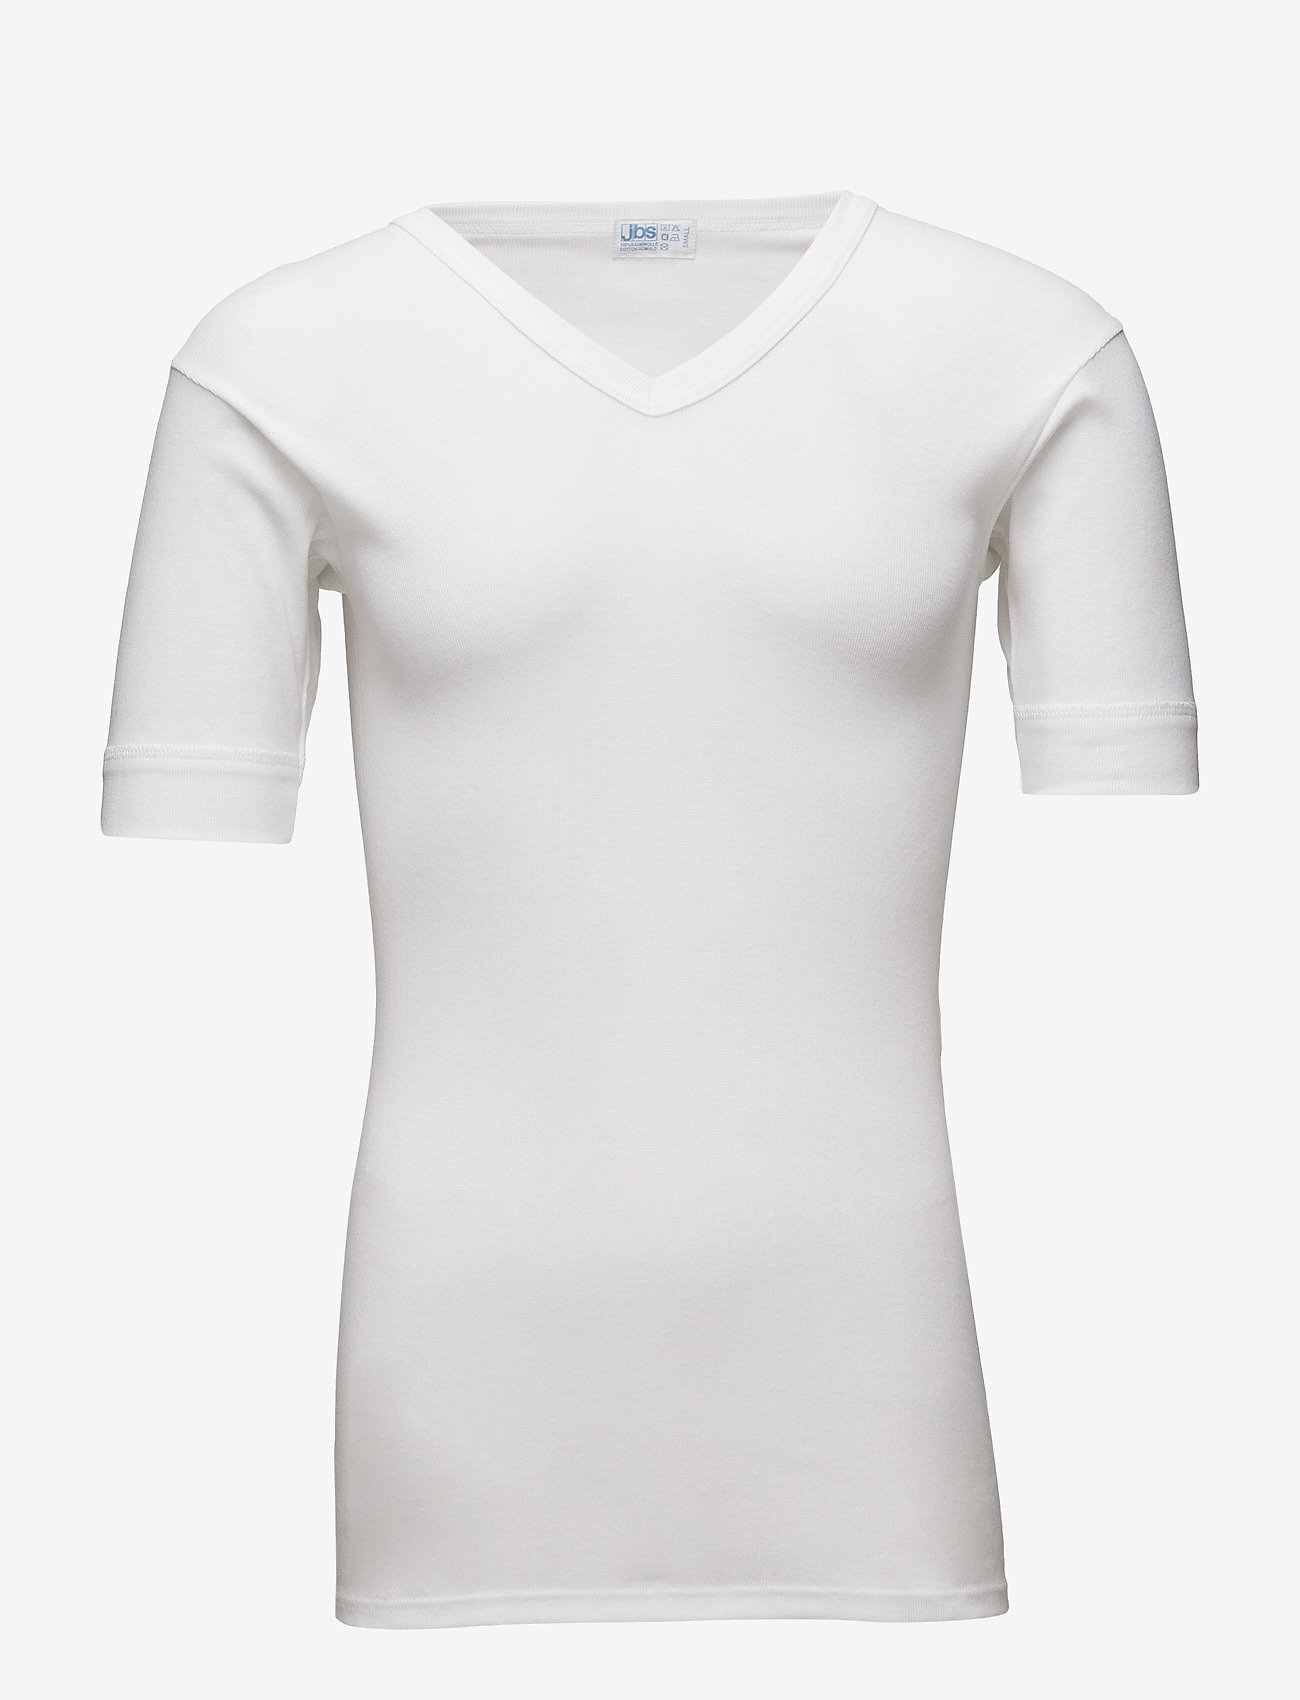 JBS - Original v-neck tee - t-shirts mit v-ausschnitt - white - 0